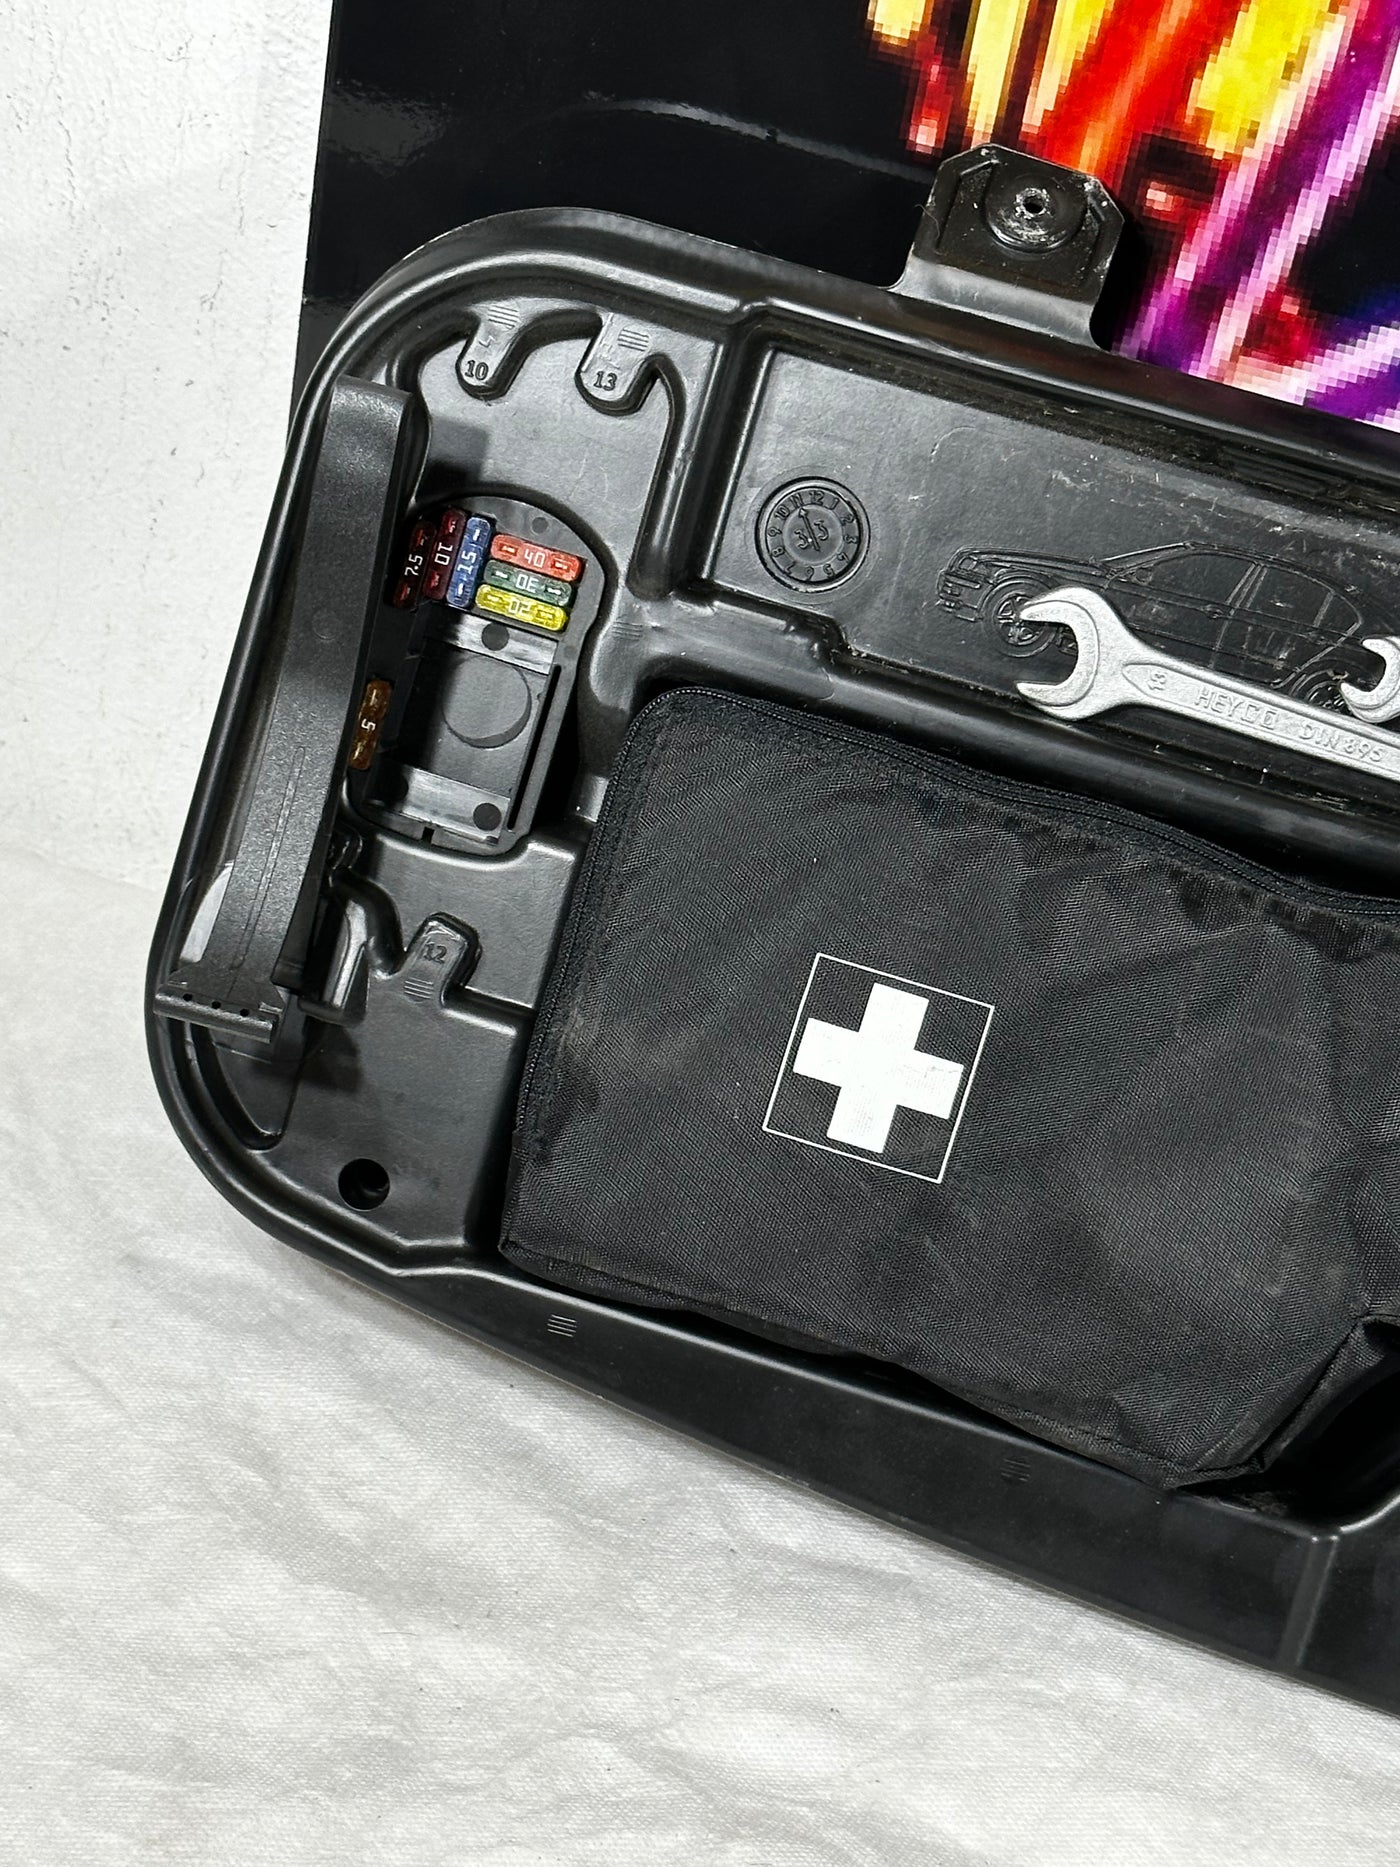 2004 2005 BMW 545i Sedan Rear Trunk Emergency First Aid Kit Tool Set 71116761420